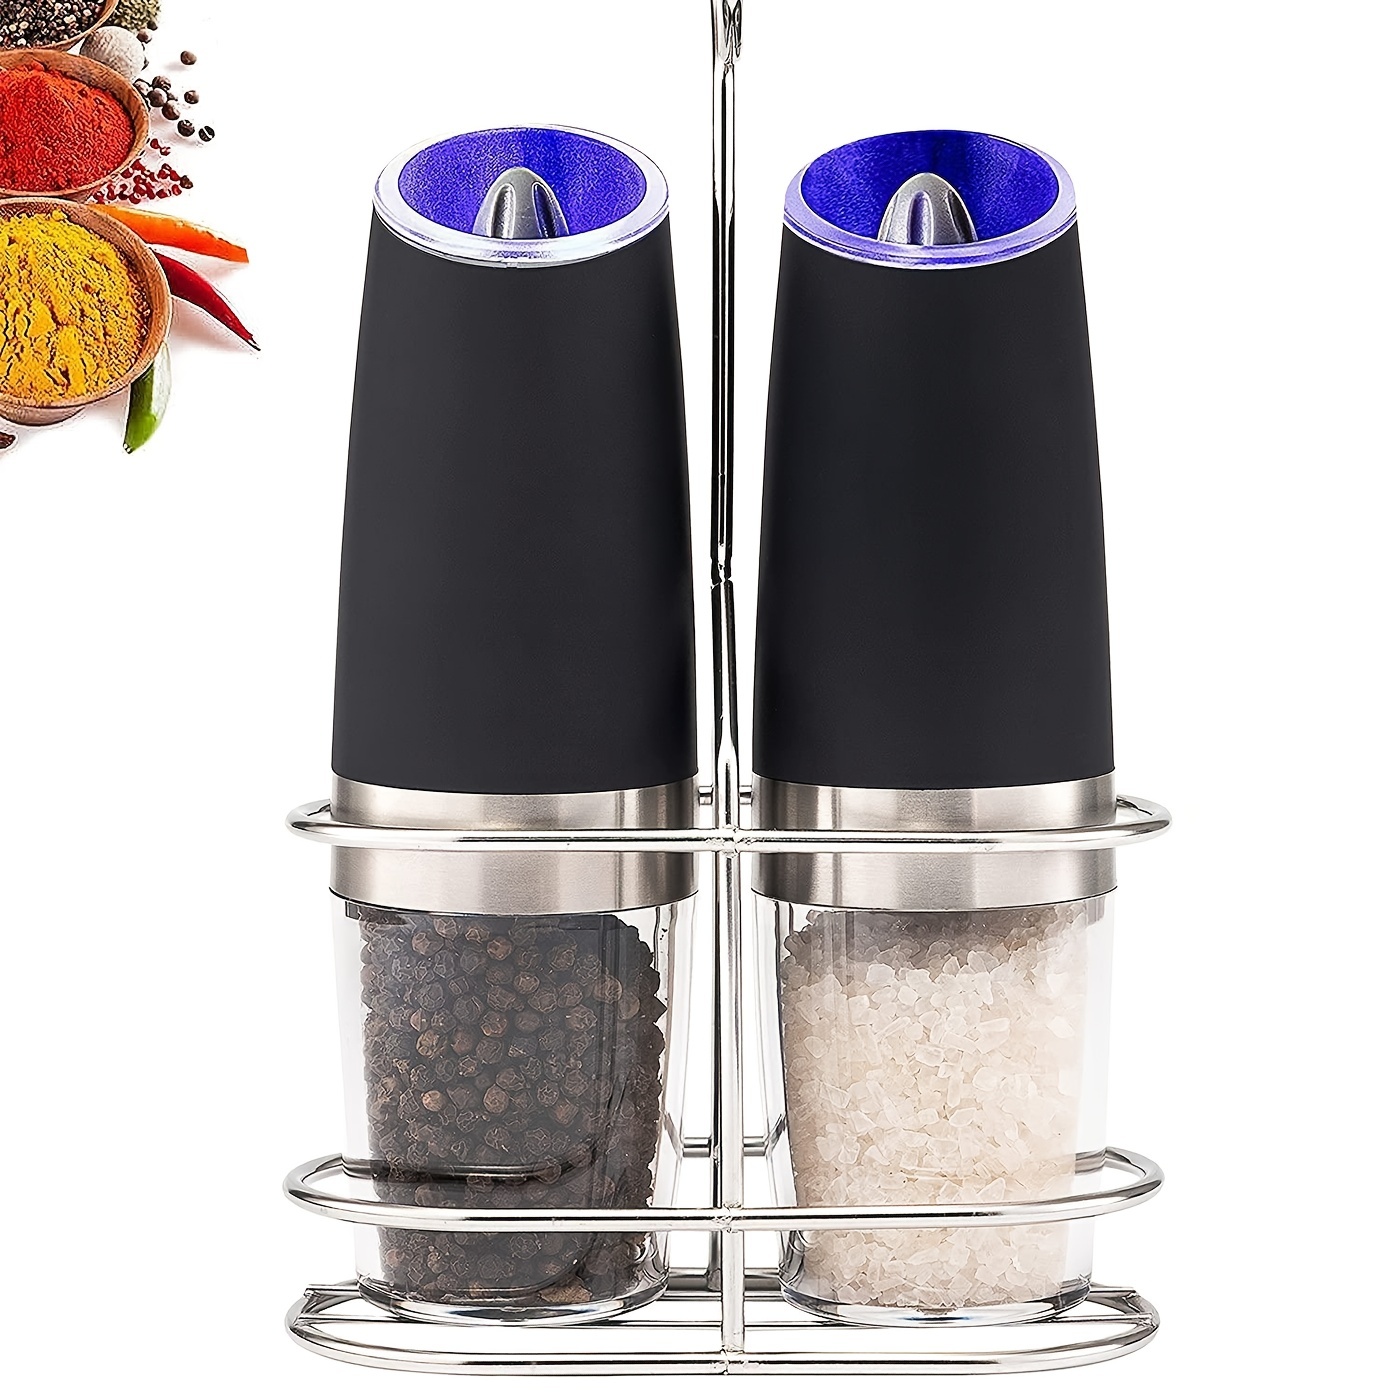 Electric Salt and Pepper Grinder Set,USB Rechargeable Salt and Pepper  Grinder Set,XinBaoLong Stainless Steel Pepper Grinder Refillable,Adjustable